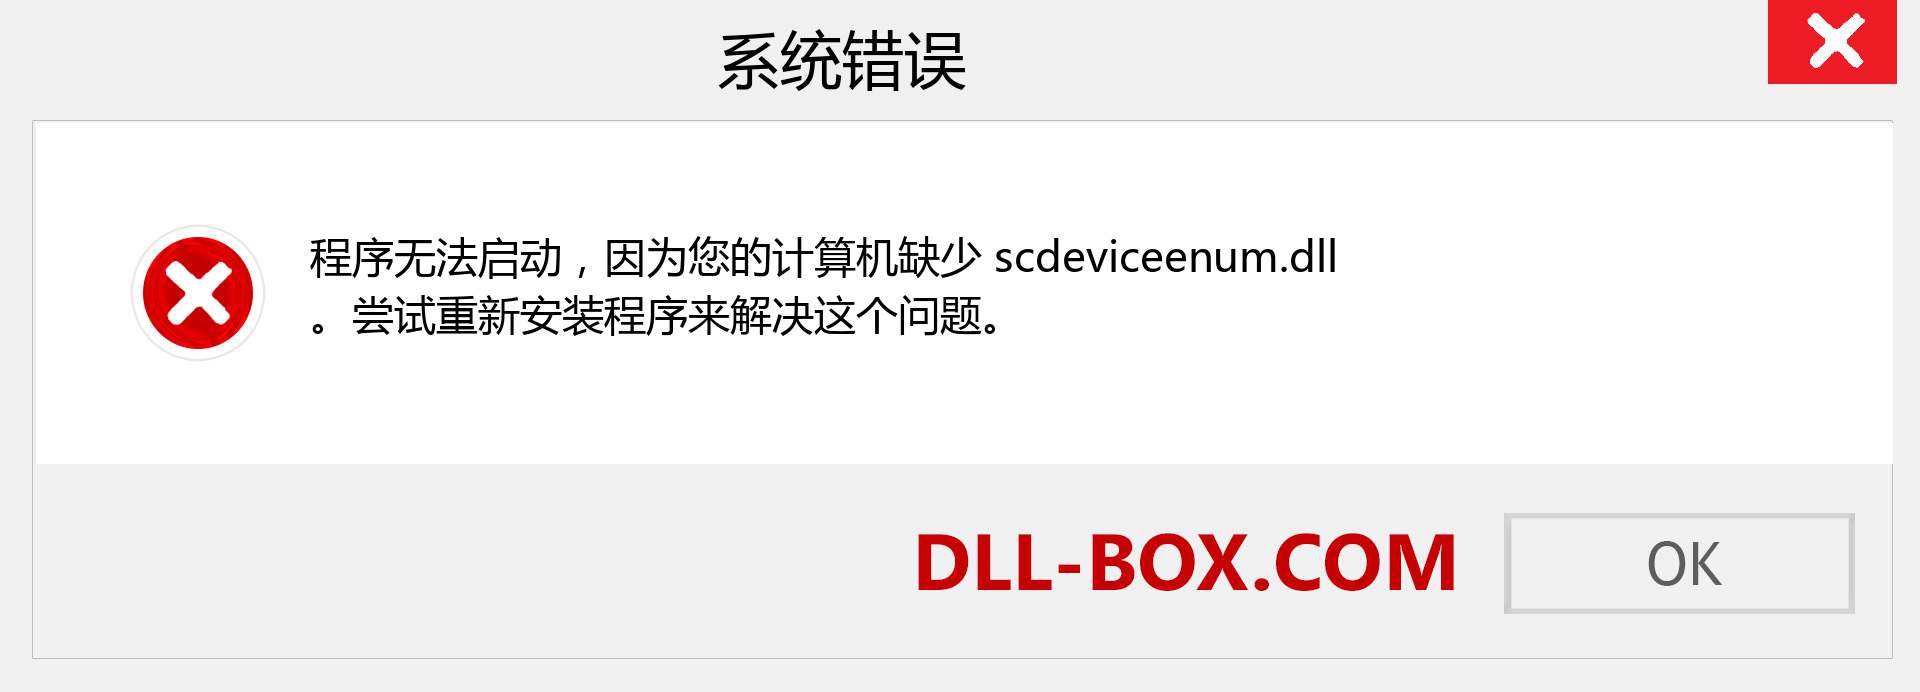 scdeviceenum.dll 文件丢失？。 适用于 Windows 7、8、10 的下载 - 修复 Windows、照片、图像上的 scdeviceenum dll 丢失错误